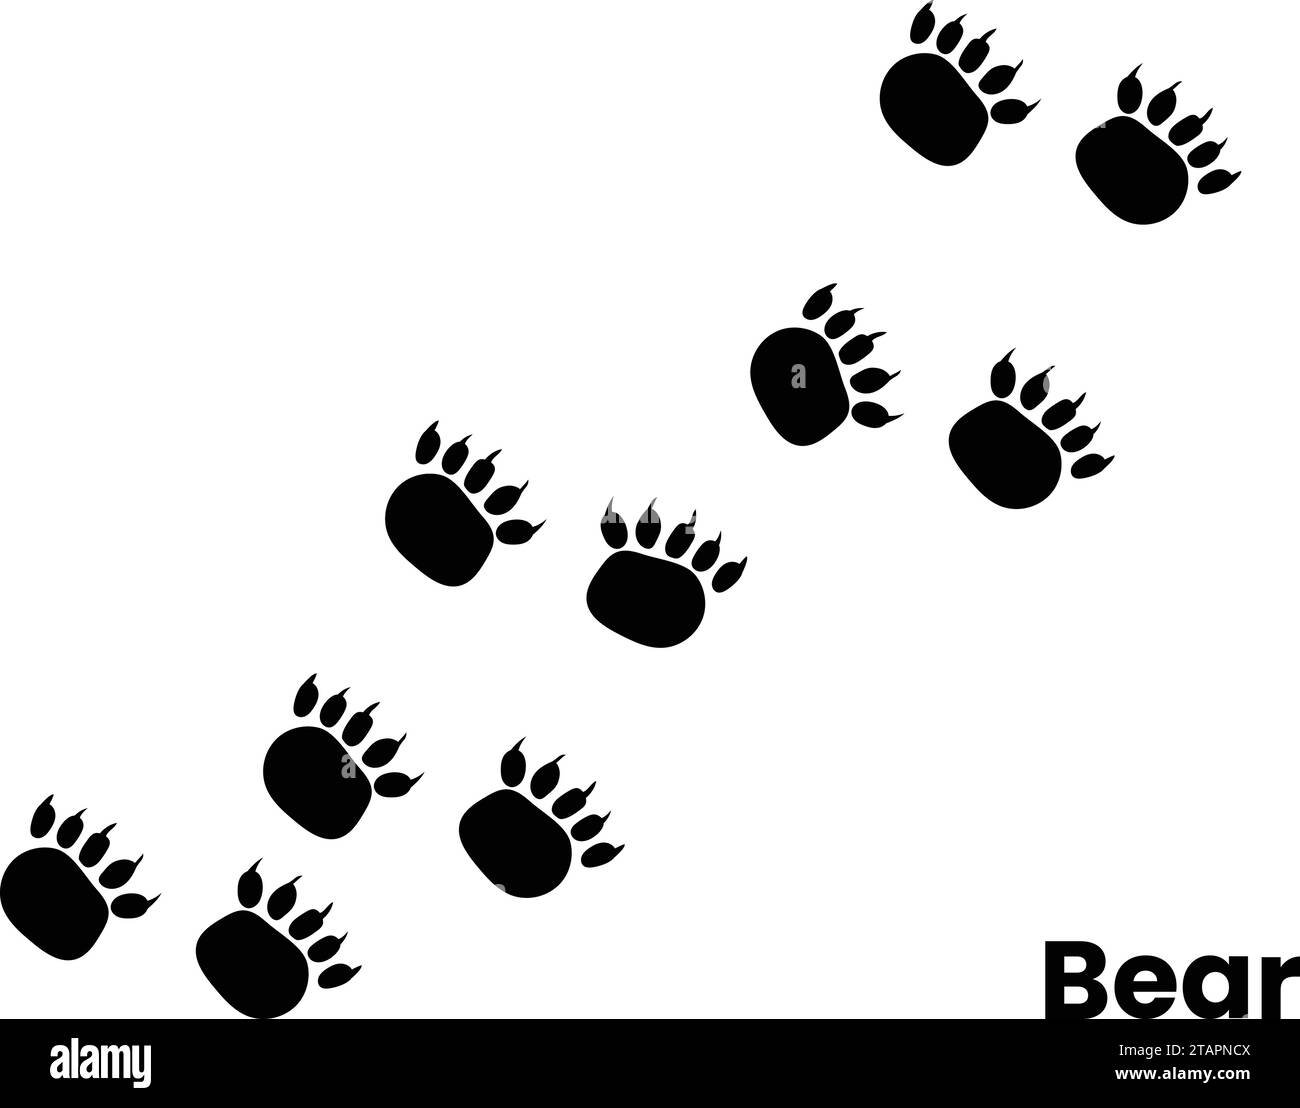 Impronte vettoriali piatte nere di gradini di orso grizzly isolati su sfondo bianco Illustrazione Vettoriale